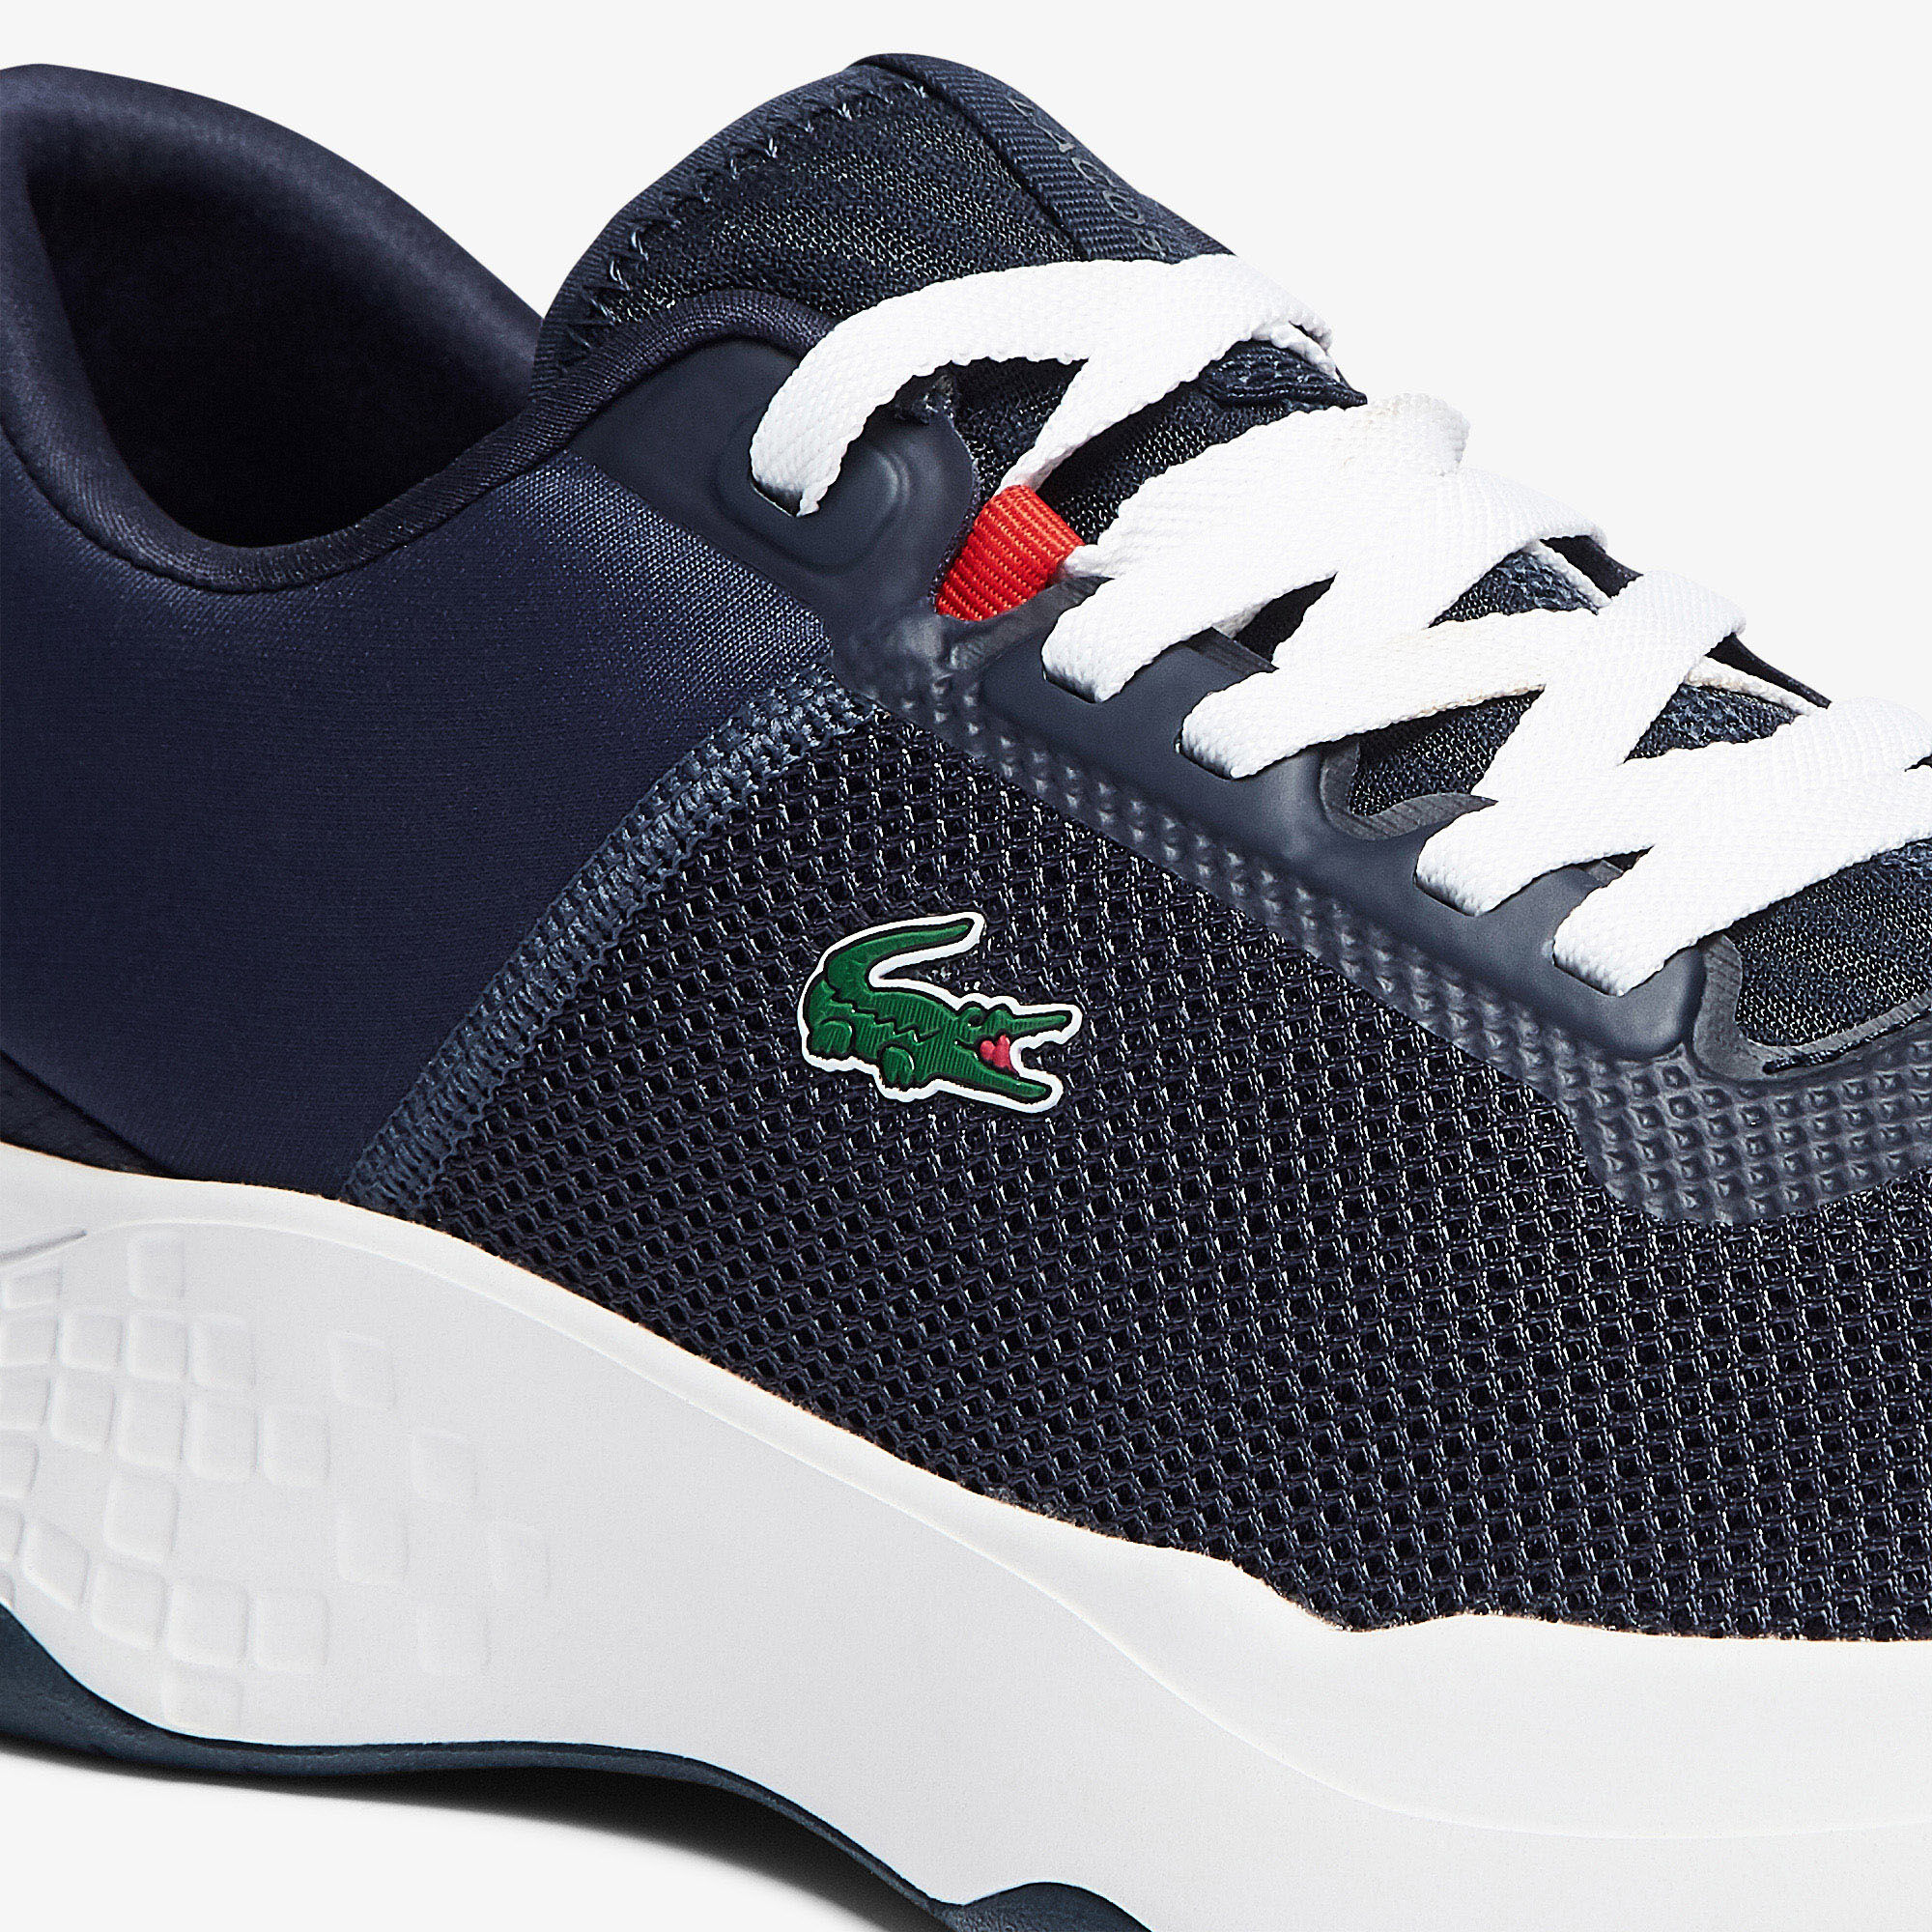 Men's Court-Drive Textile Sneakers